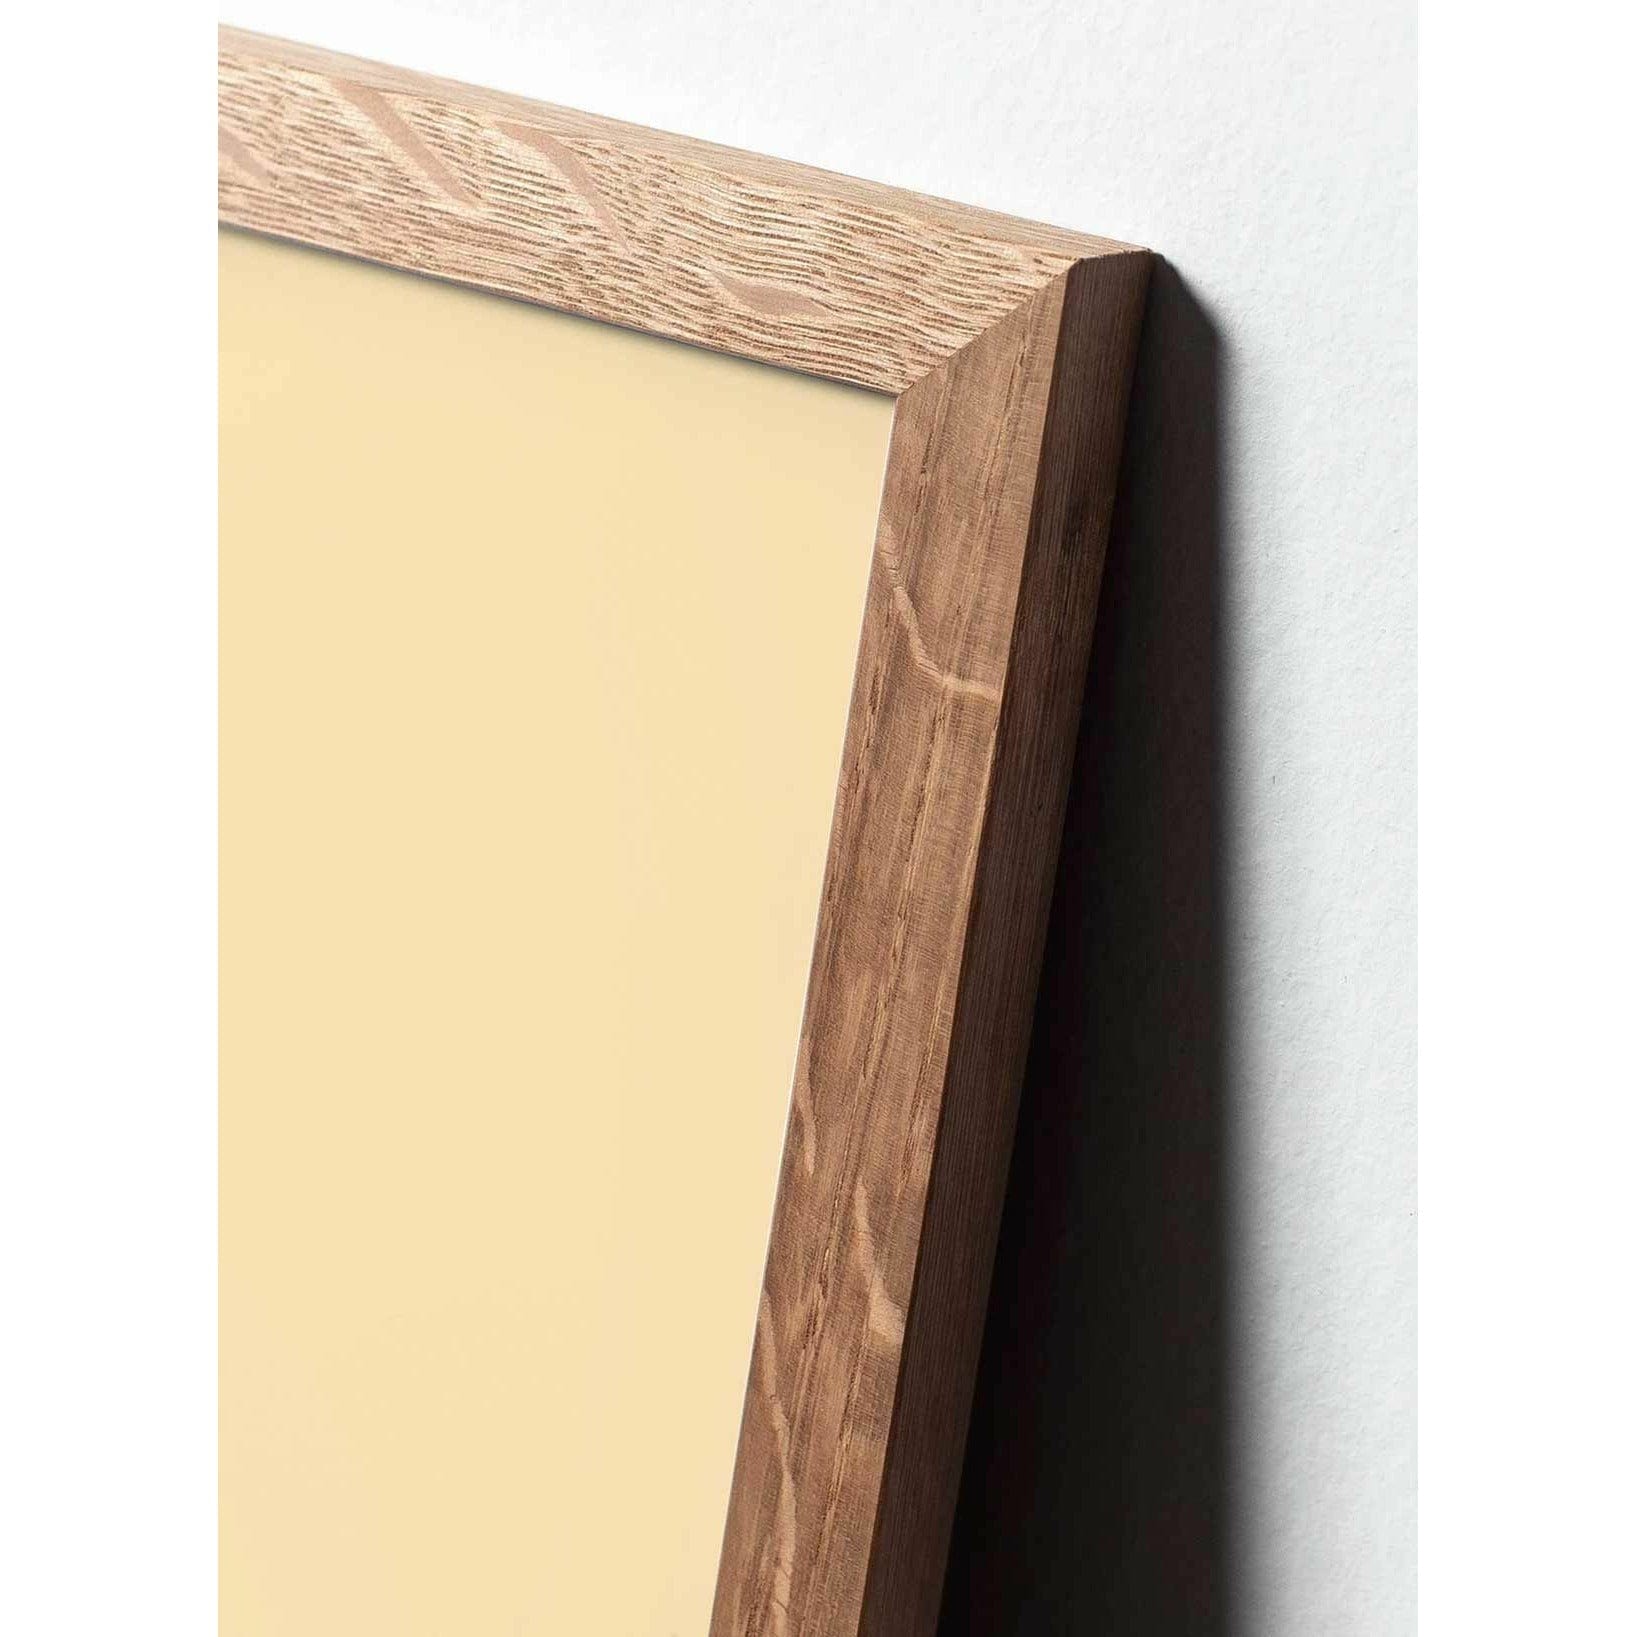 brainchild Affiche classique du cône en pin, cadre en bois clair 70x100 cm, fond de couleur sable